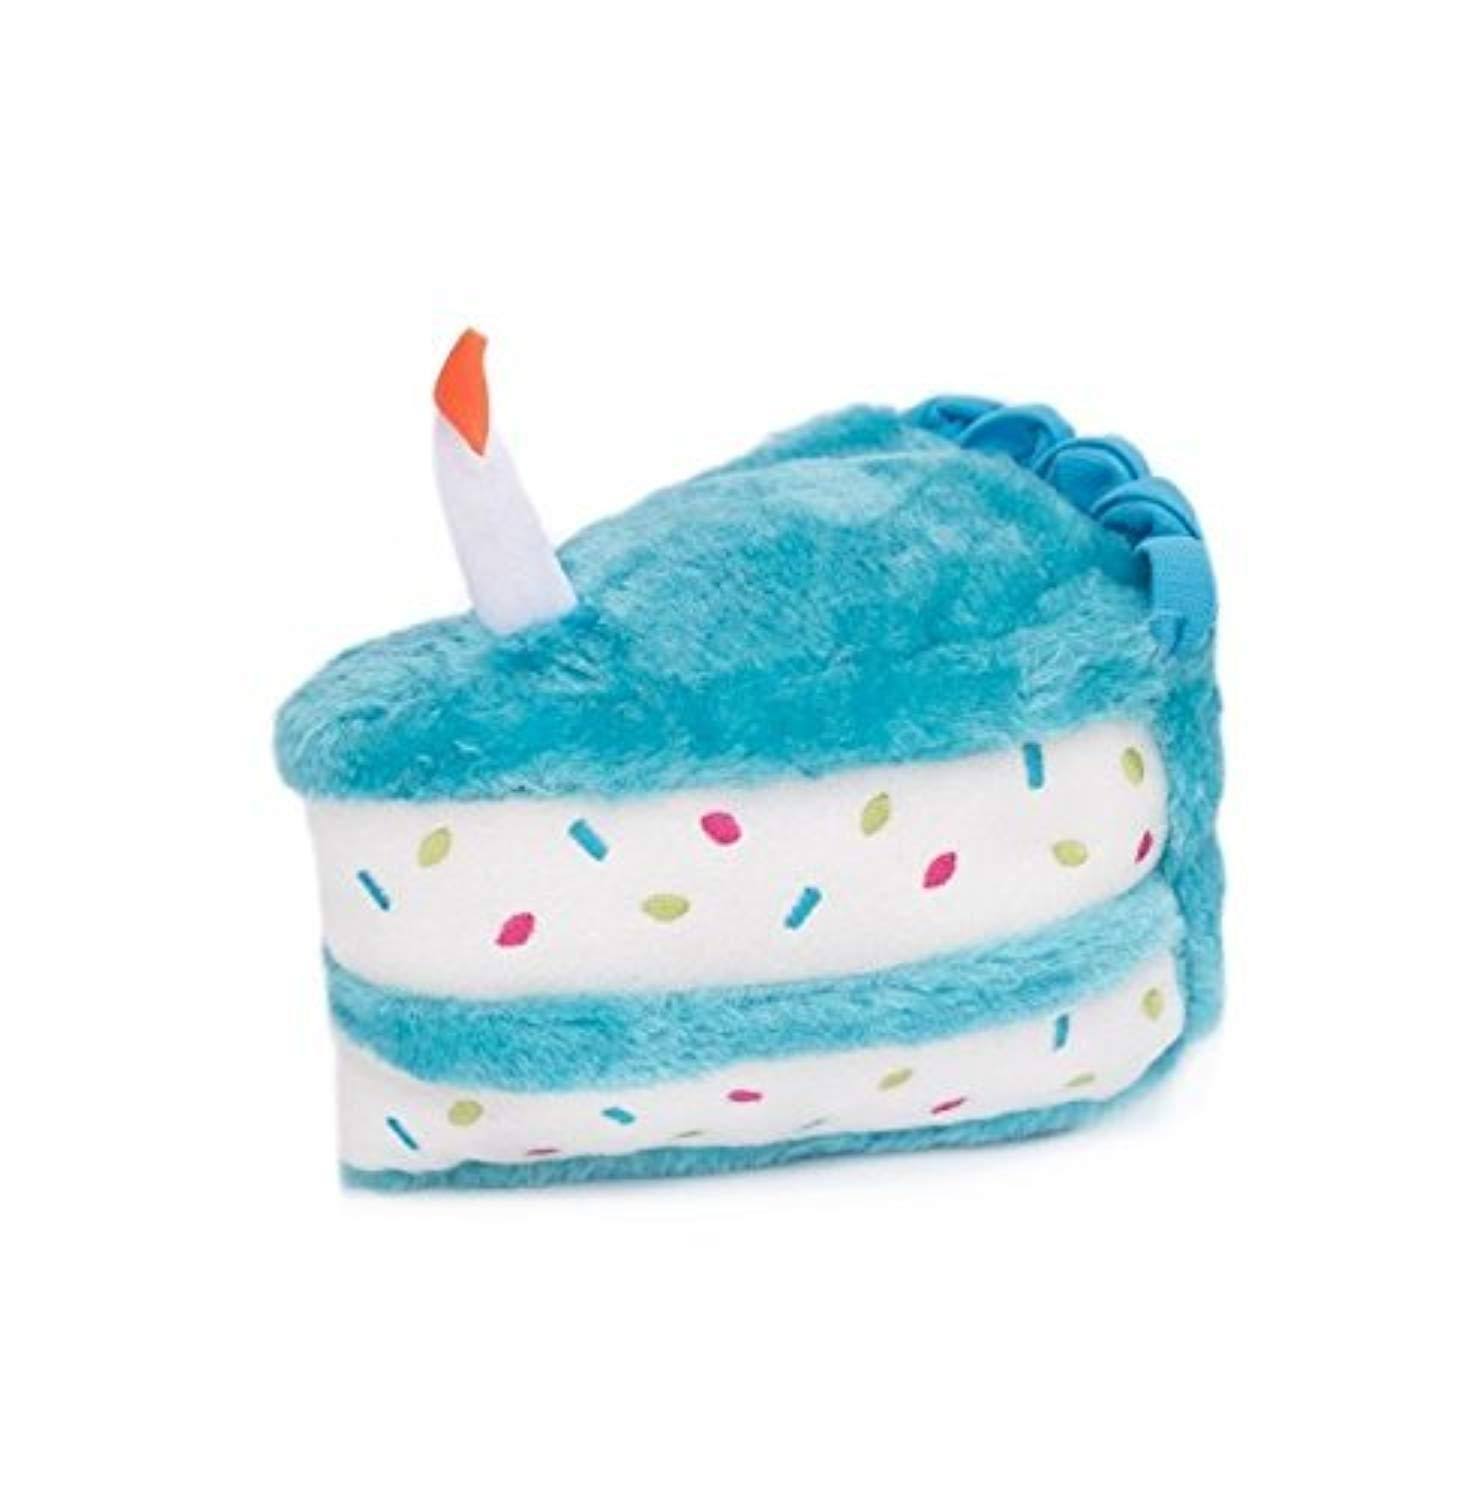 ZippyPaws Birthday Cake Blue Dog Toy